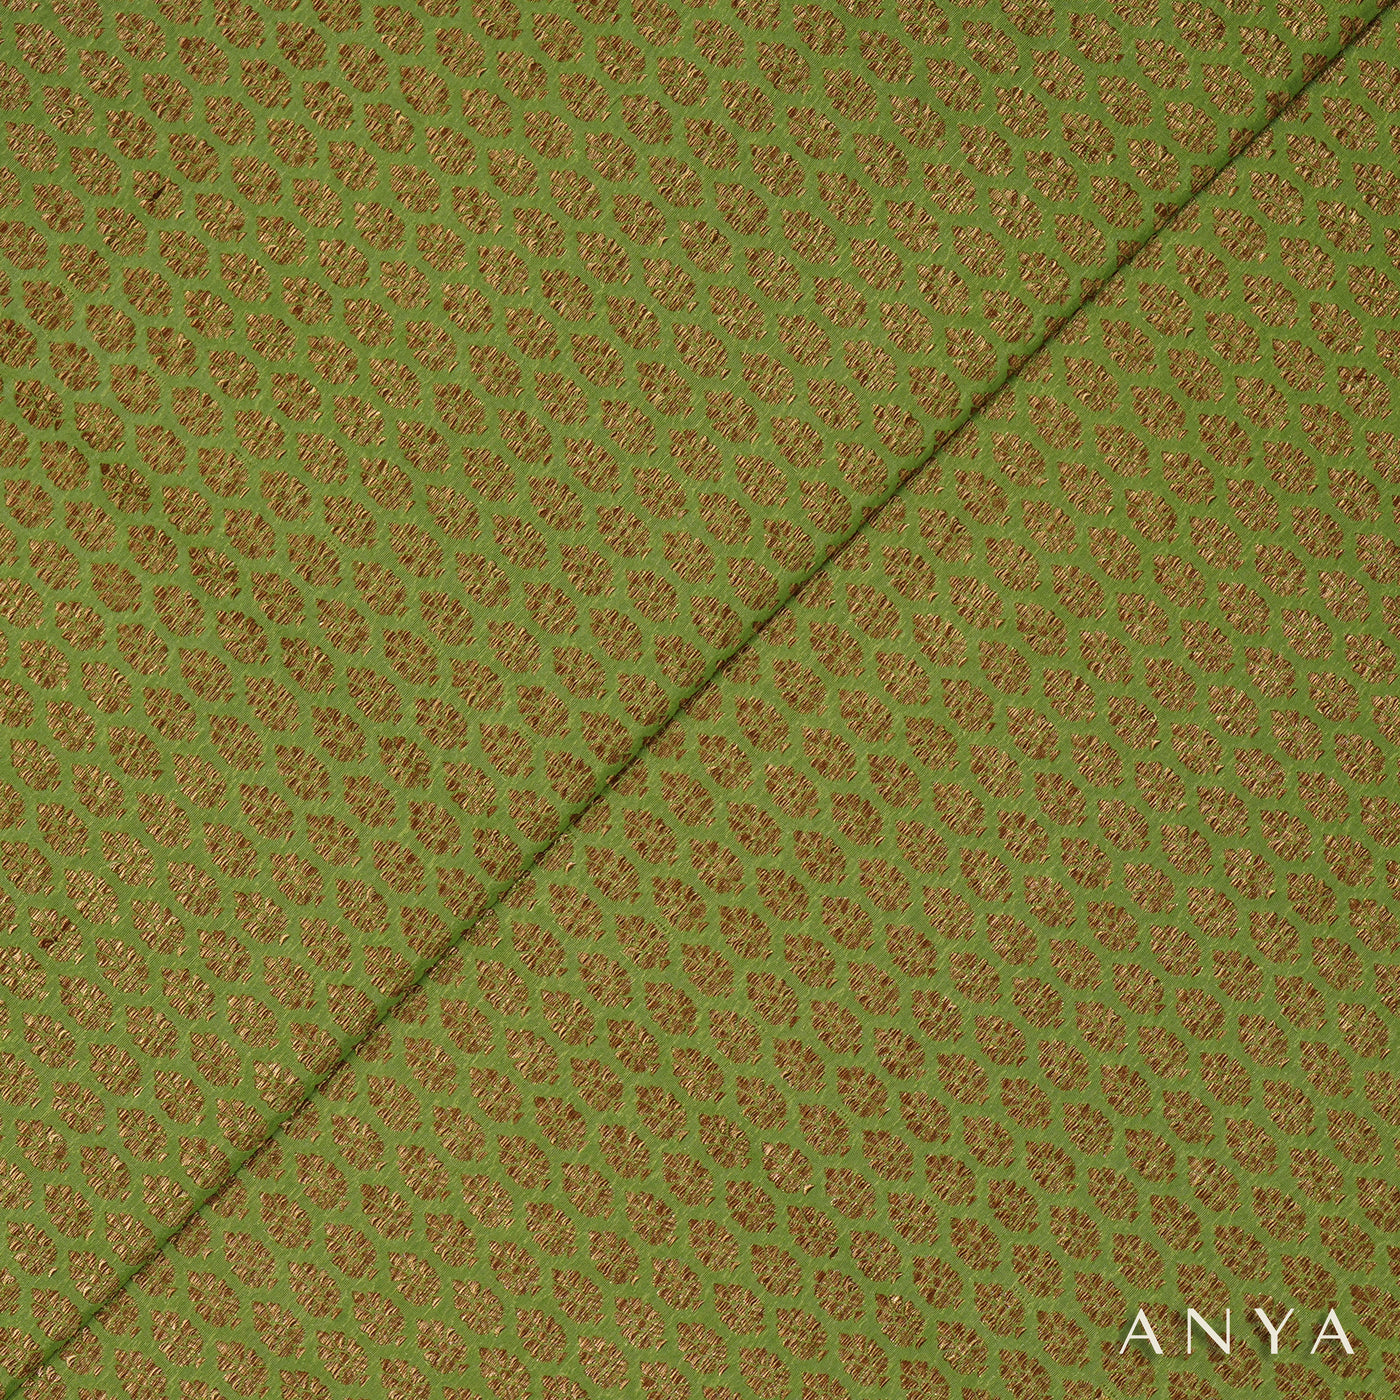 Apple Green Banarasi Silk Fabric with Zari Butta Design